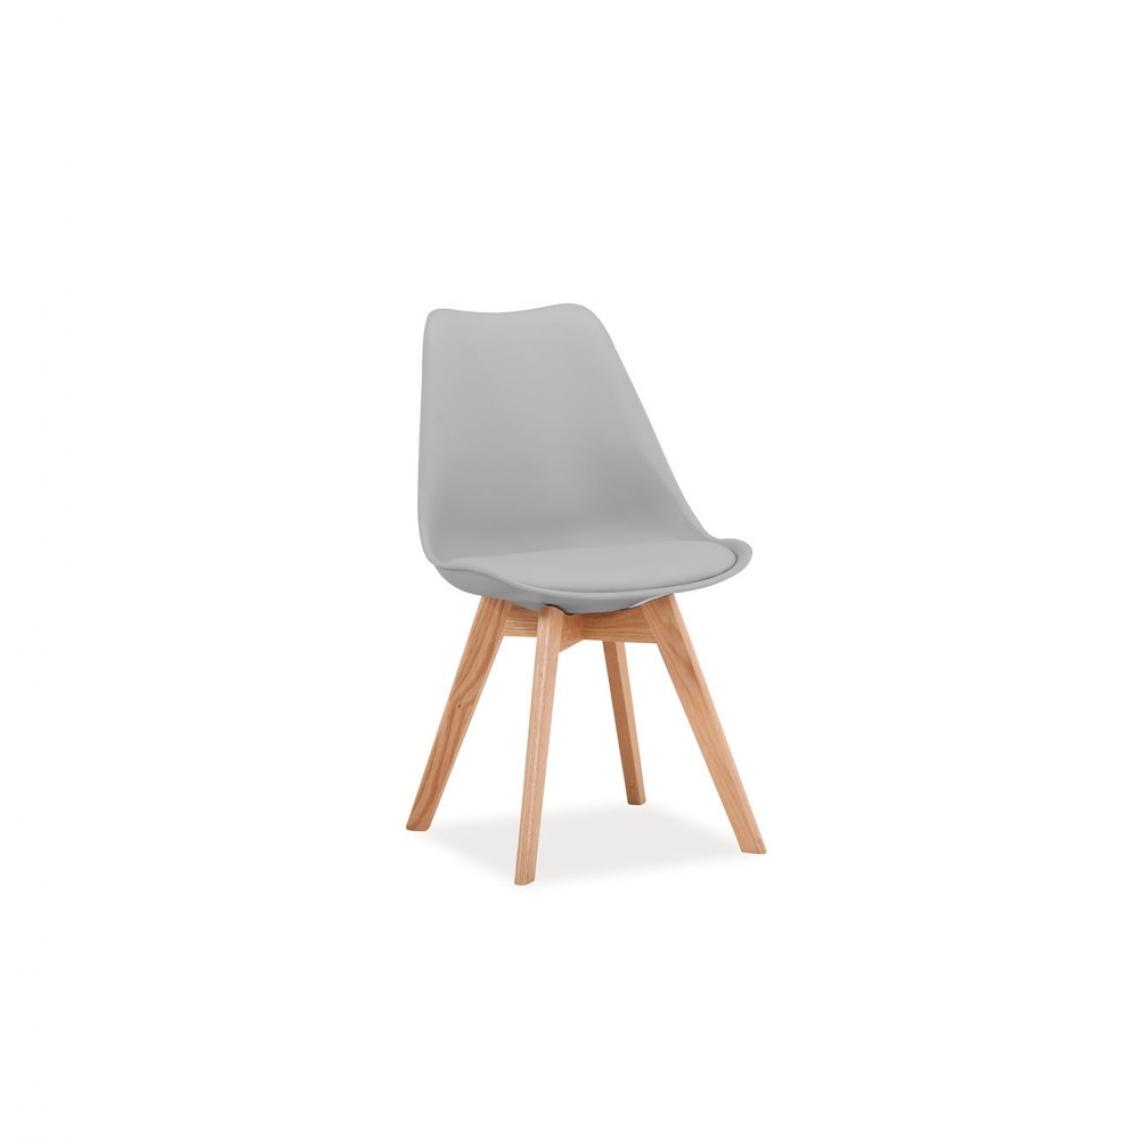 Ac-Deco - Chaise - Kris - 49 x 41 x 83 cm - Cadre en bois couleur chêne - Gris clair - Chaises